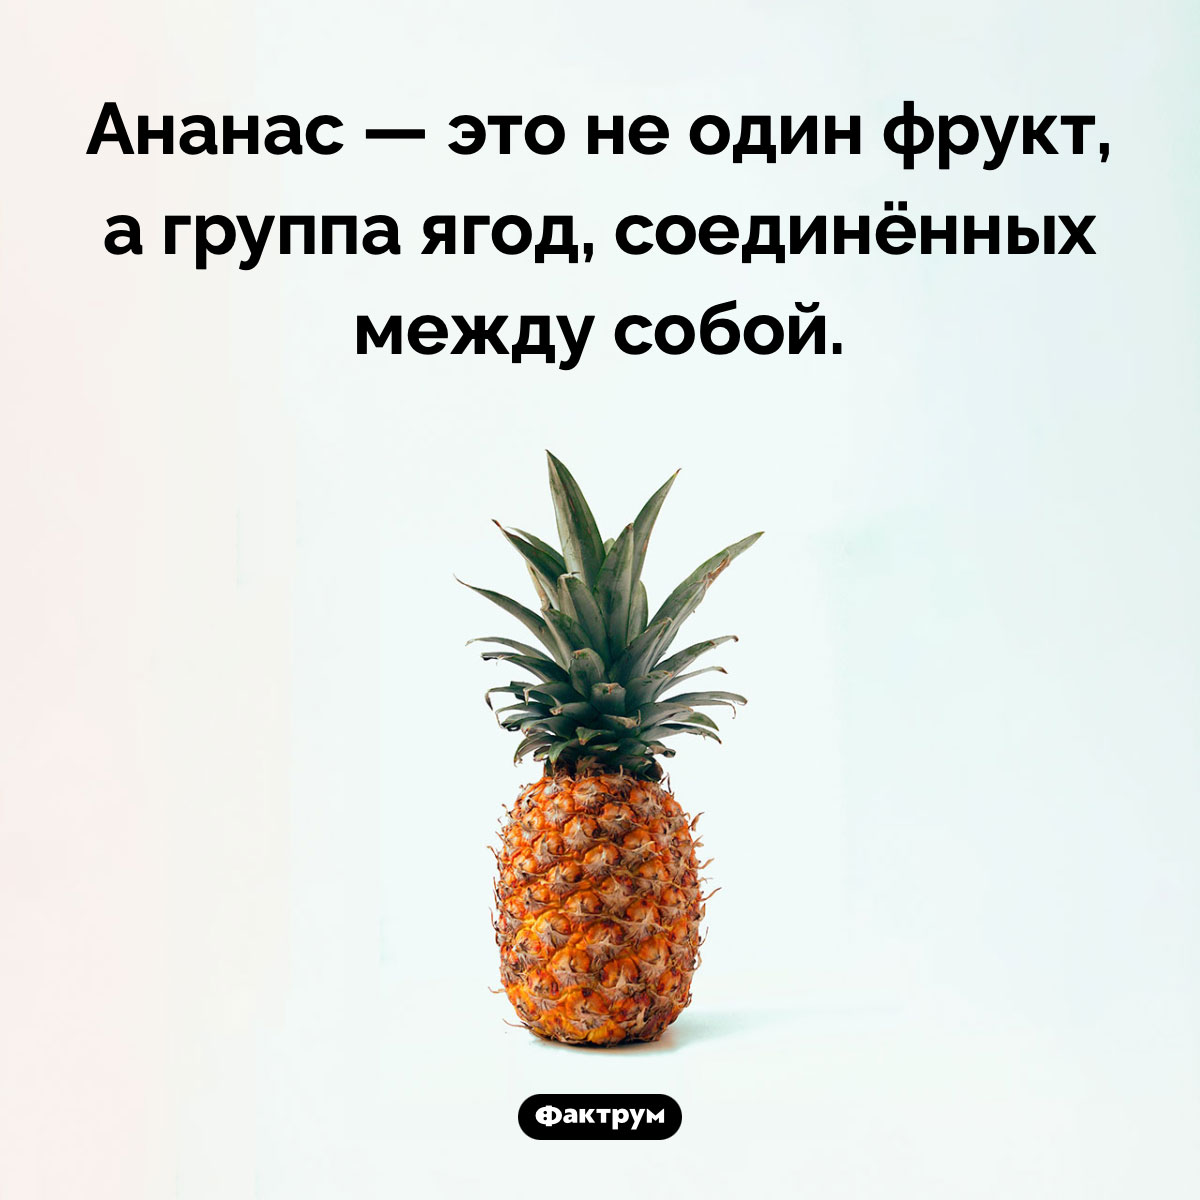 Что такое ананас. Ананас — это не один фрукт, а группа ягод, соединённых между собой.